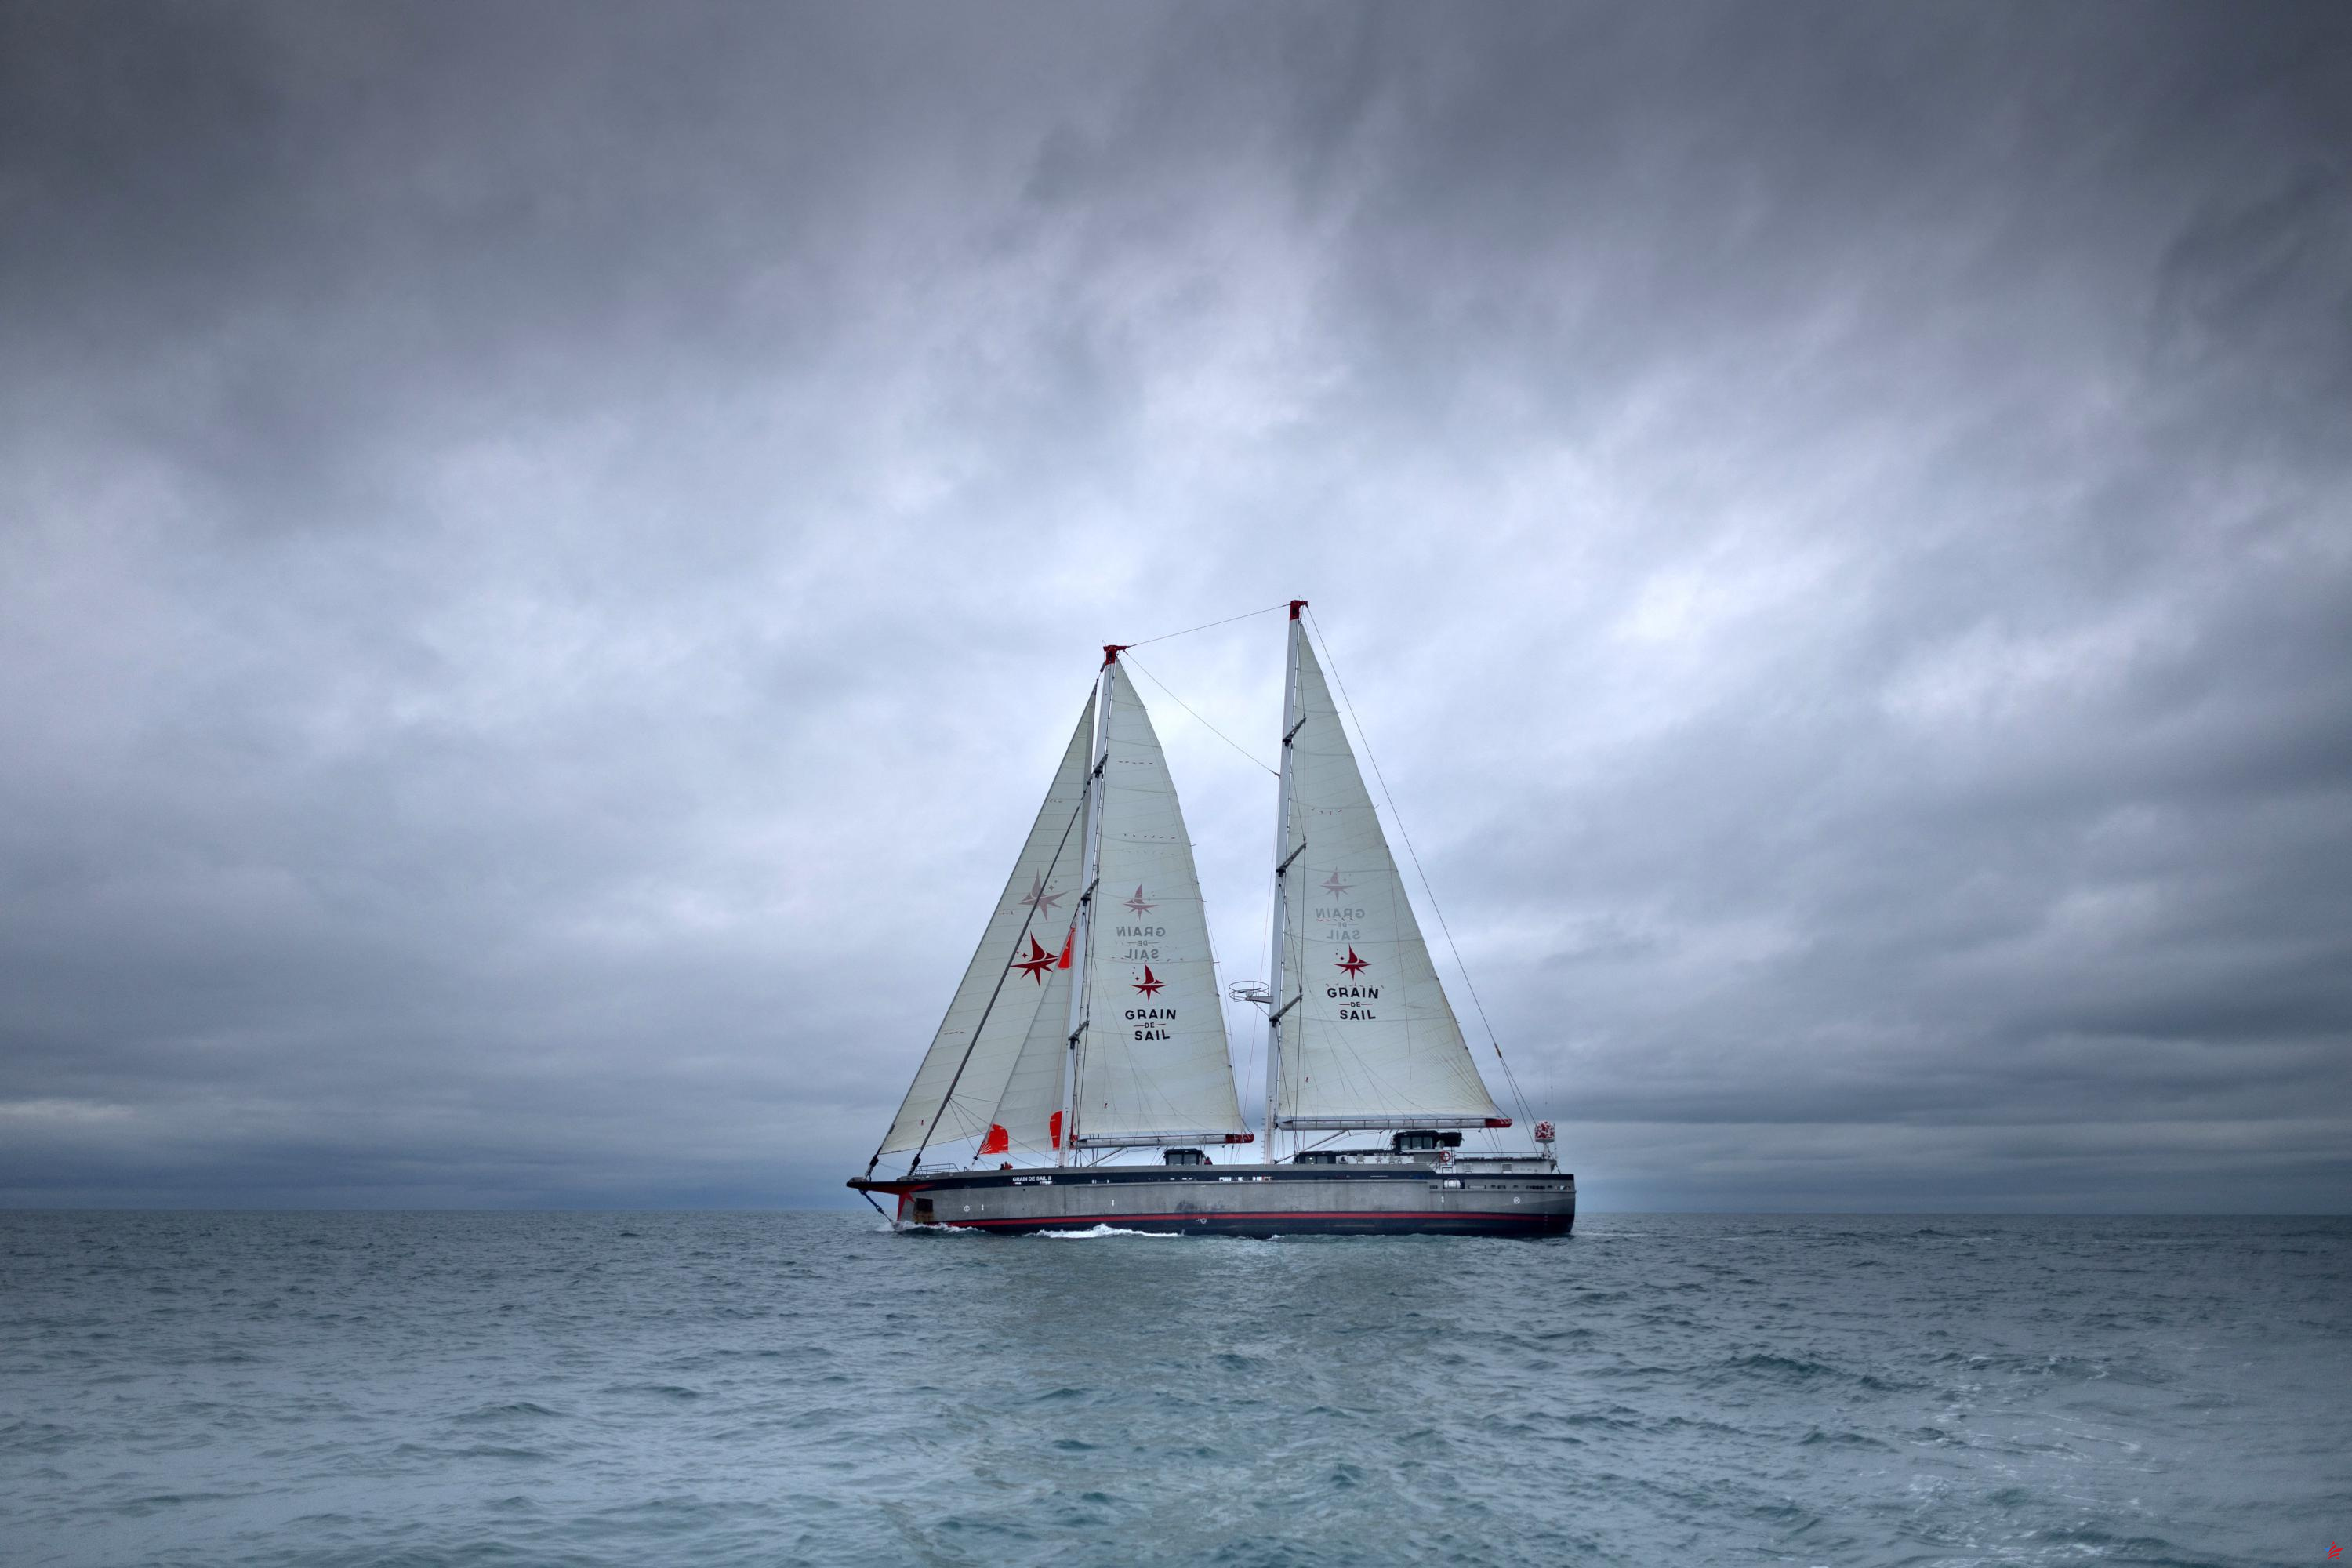 El Breton Grain de Sail gana impulso en el transporte marítimo de mercancías con su nuevo carguero